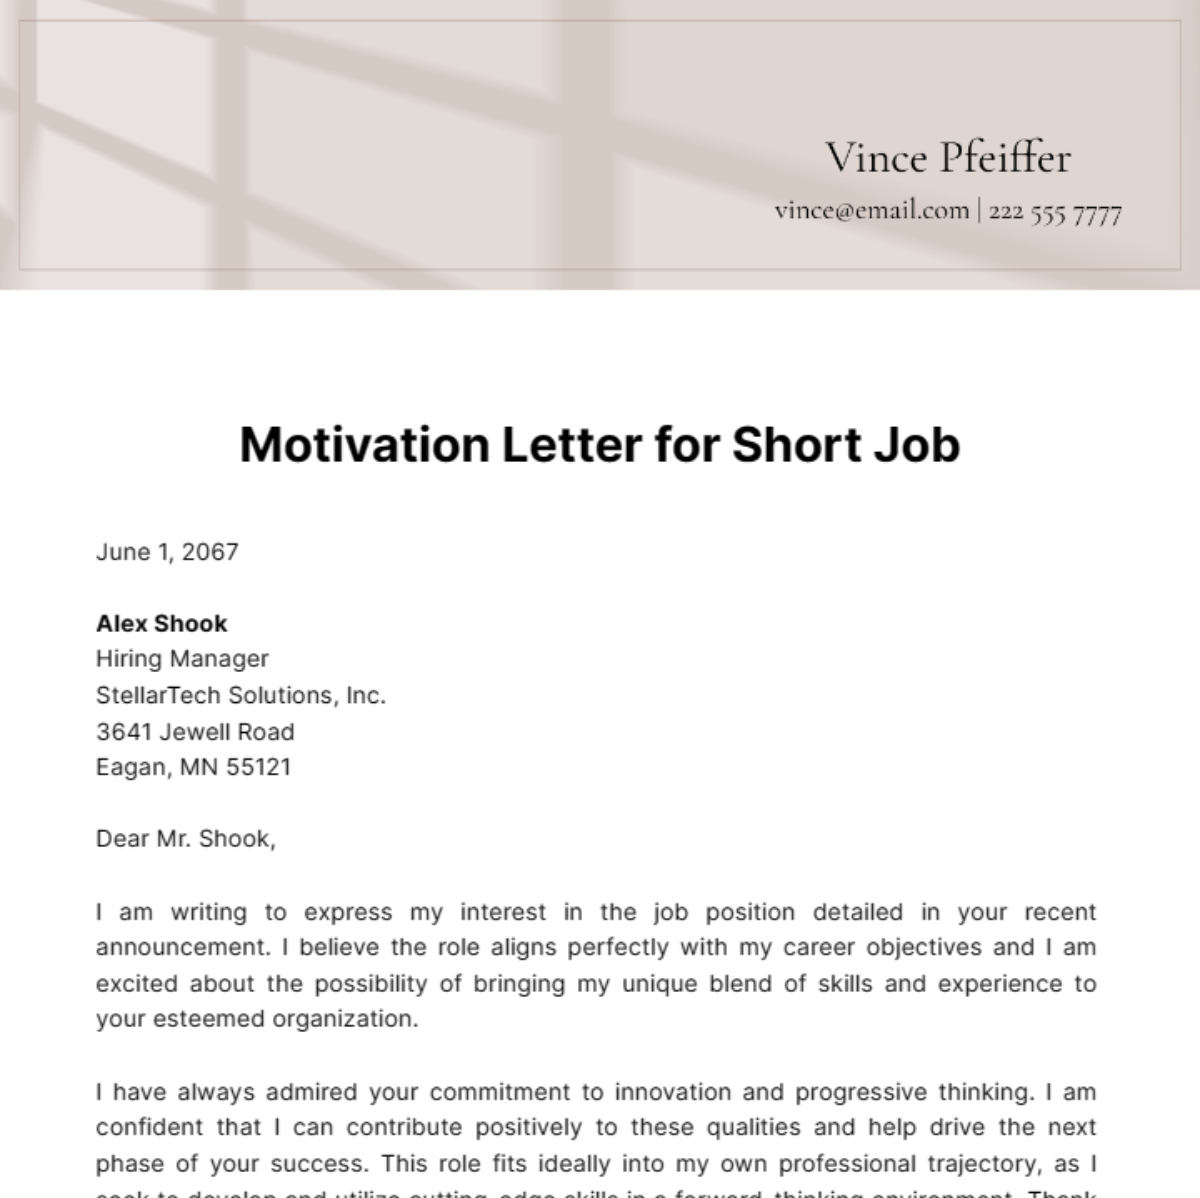 Motivation Letter for Short Job Template